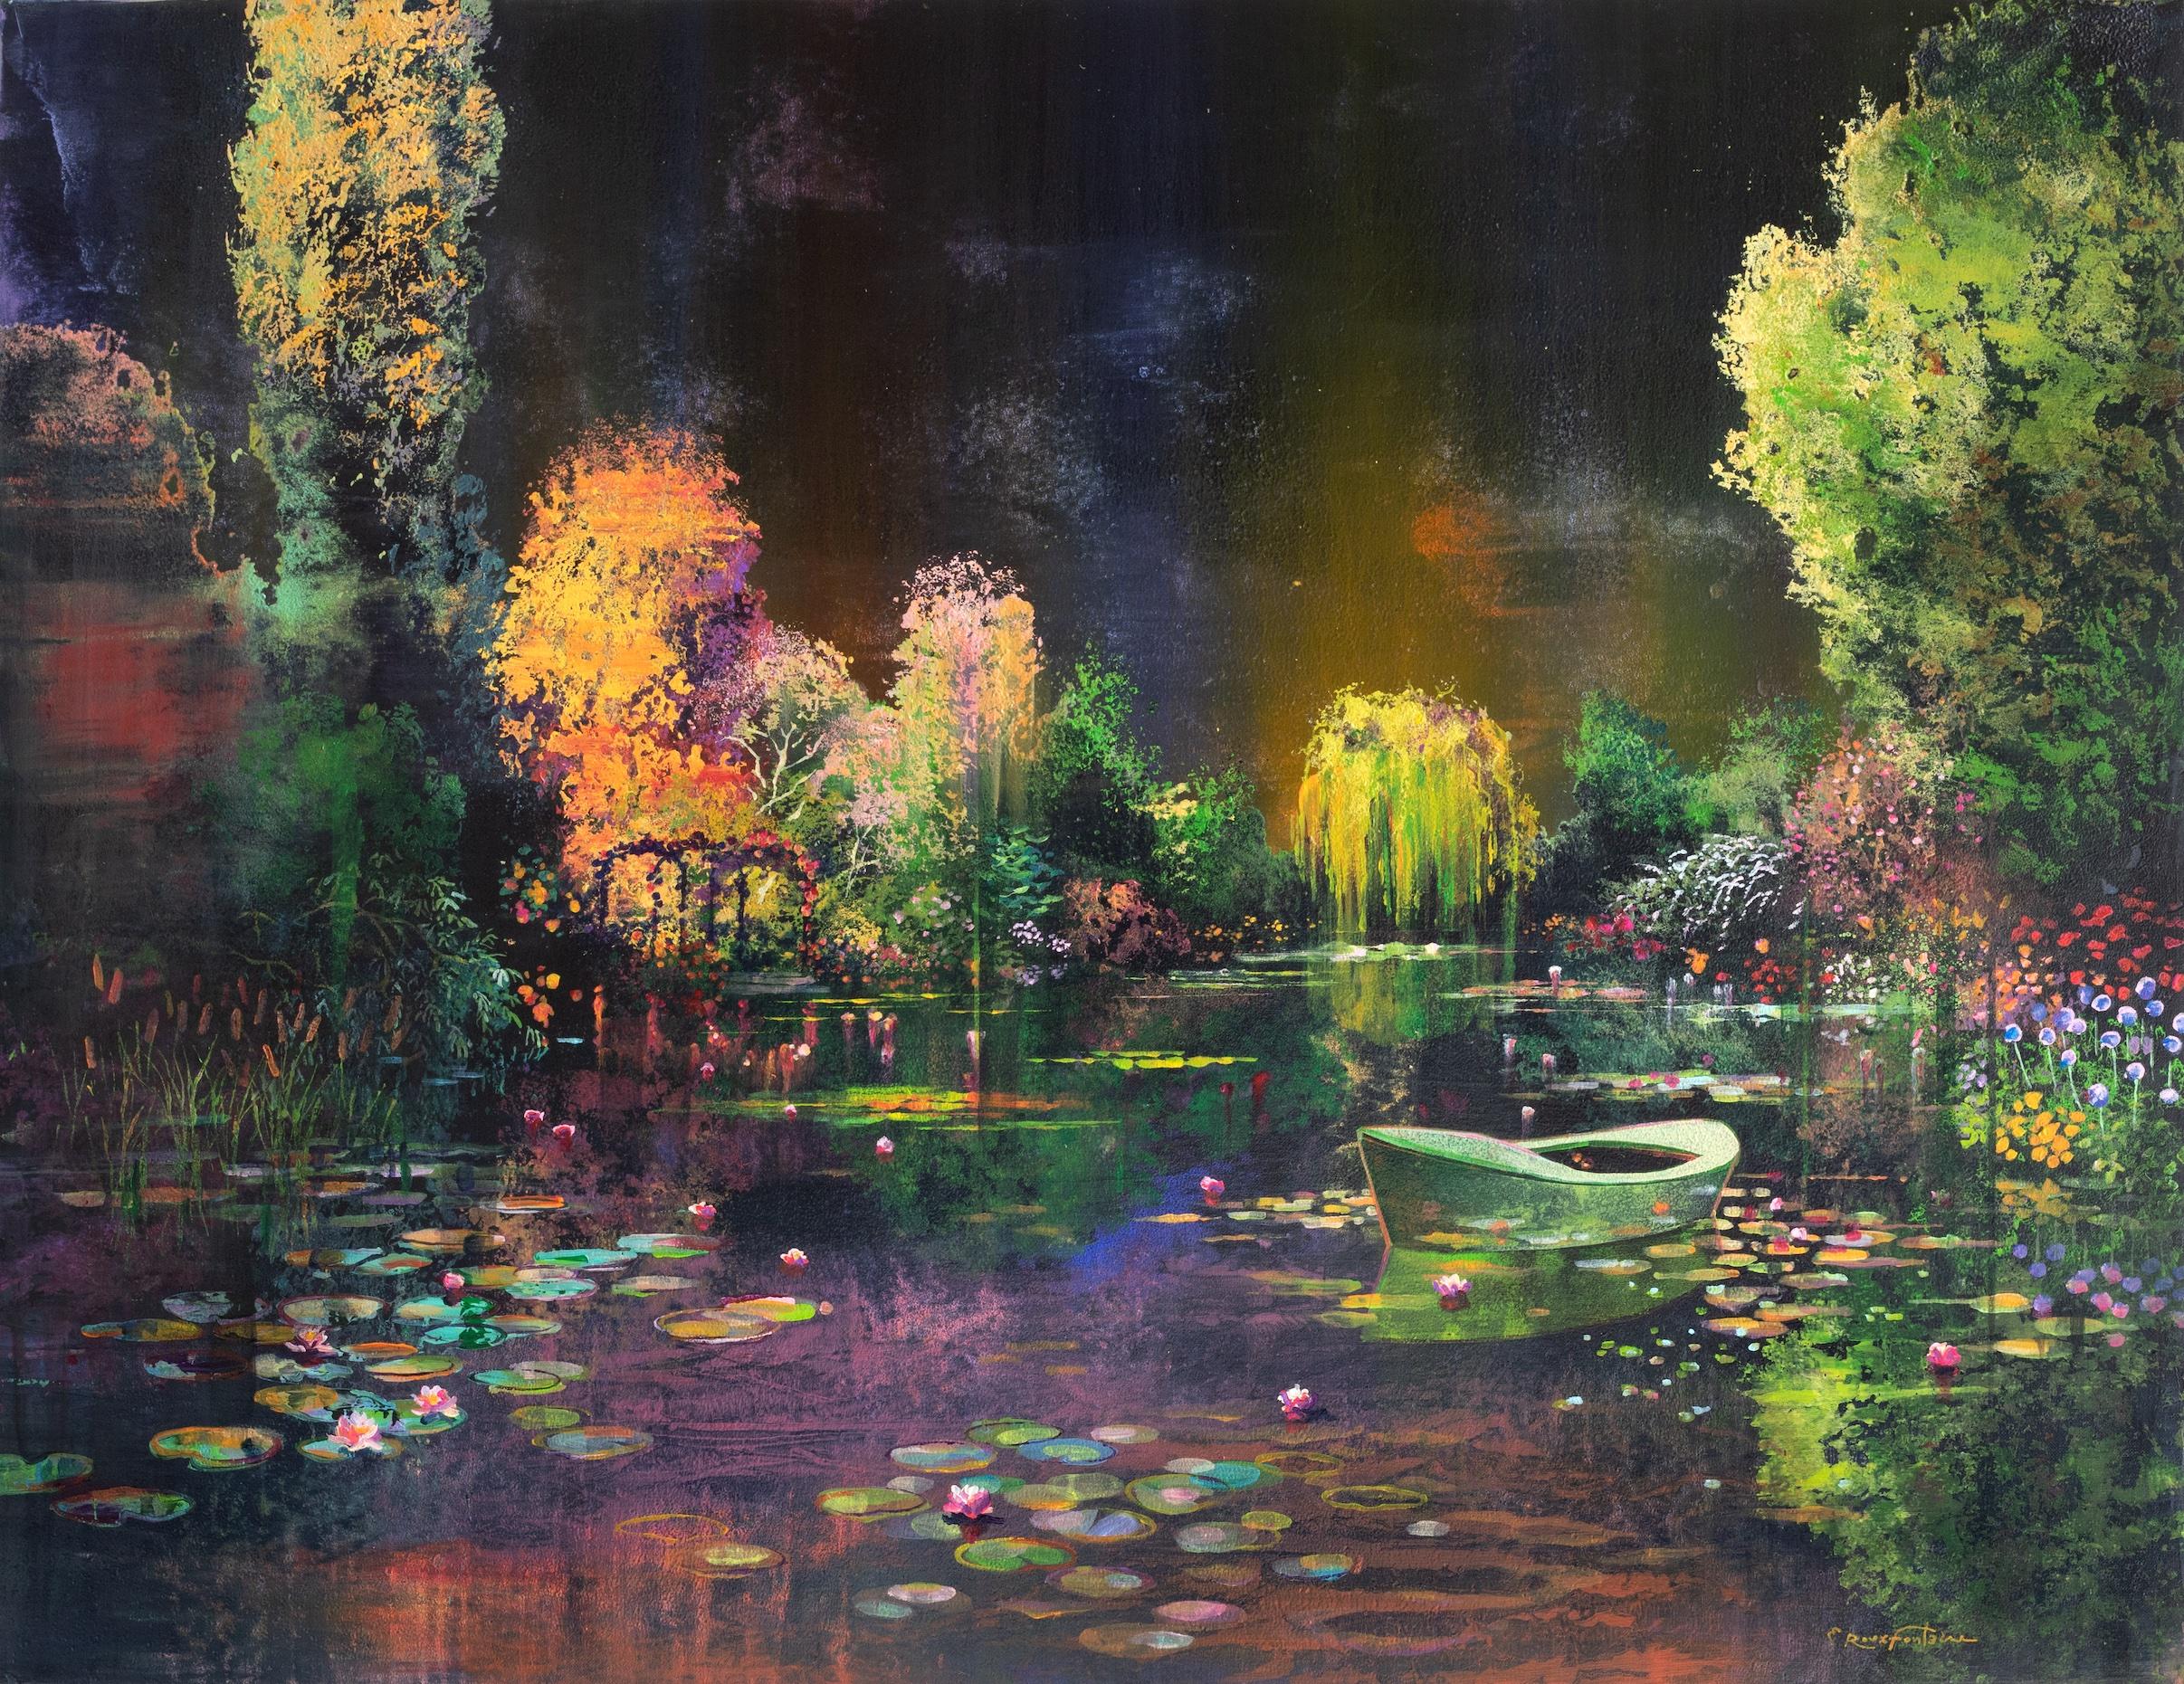 Jardin d’eaux et de feu - Painting by Eric Roux-Fontaine